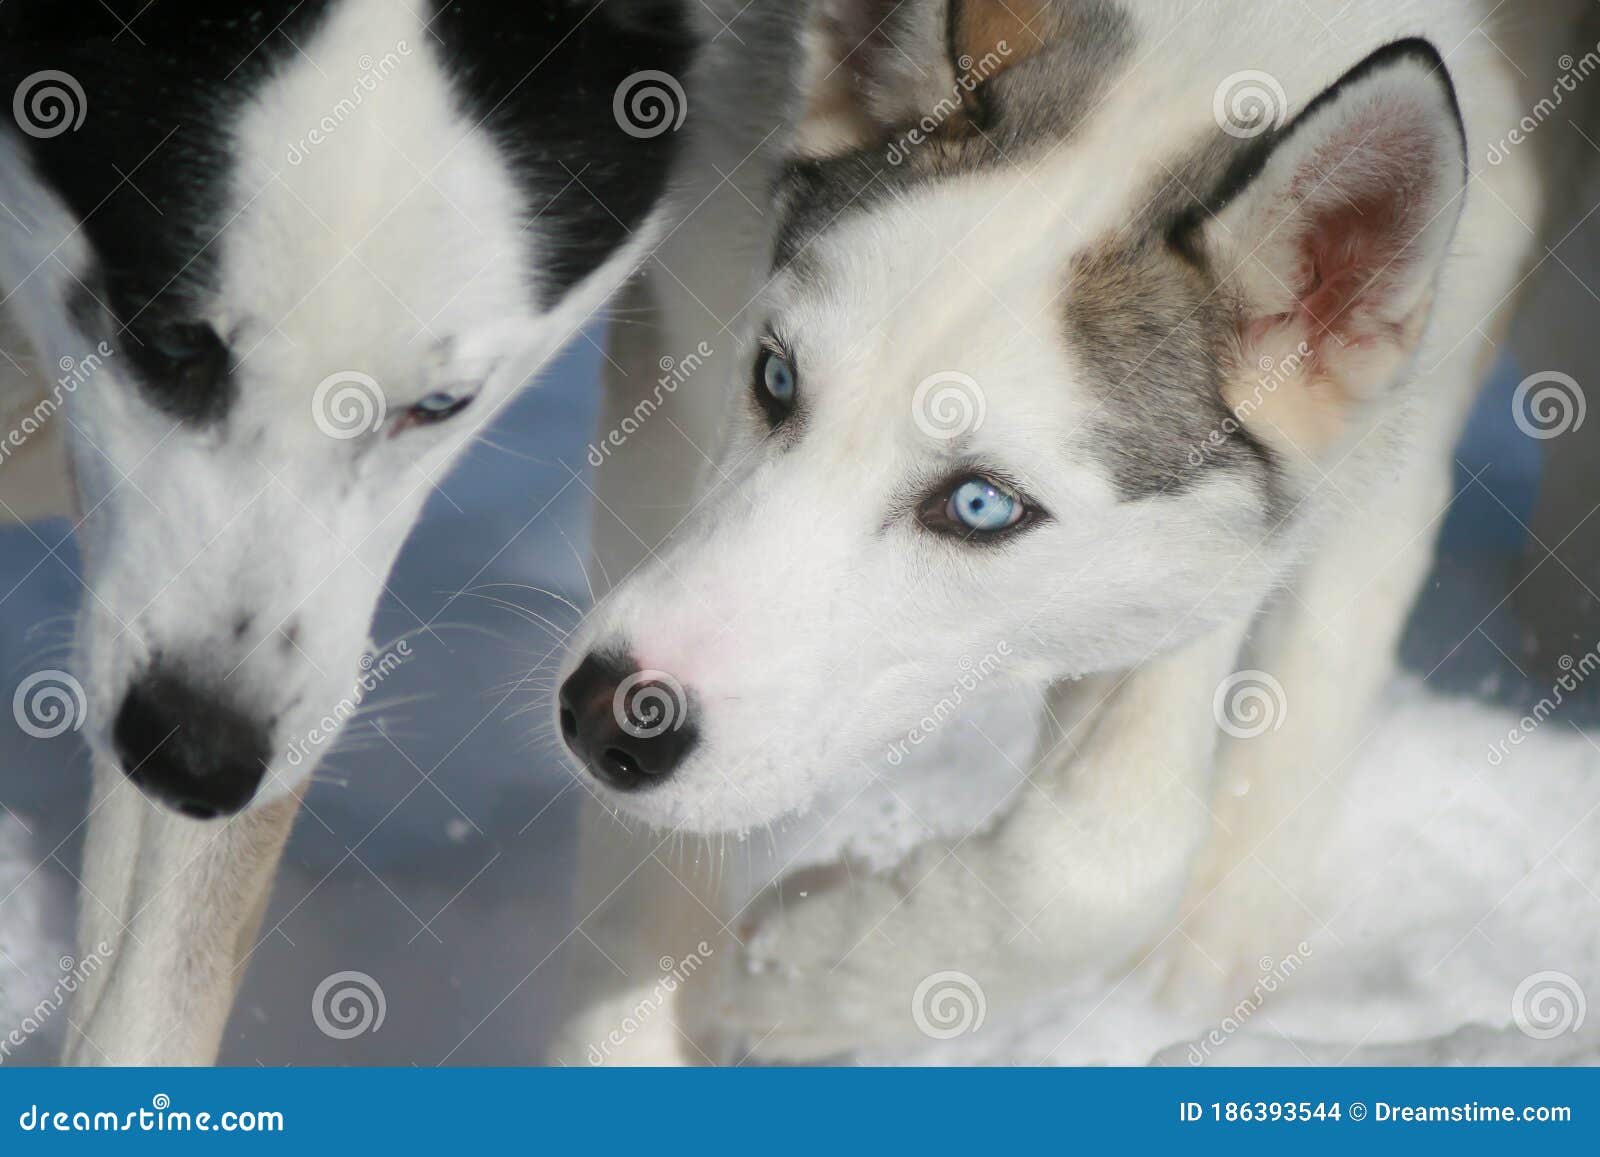 blue huskies